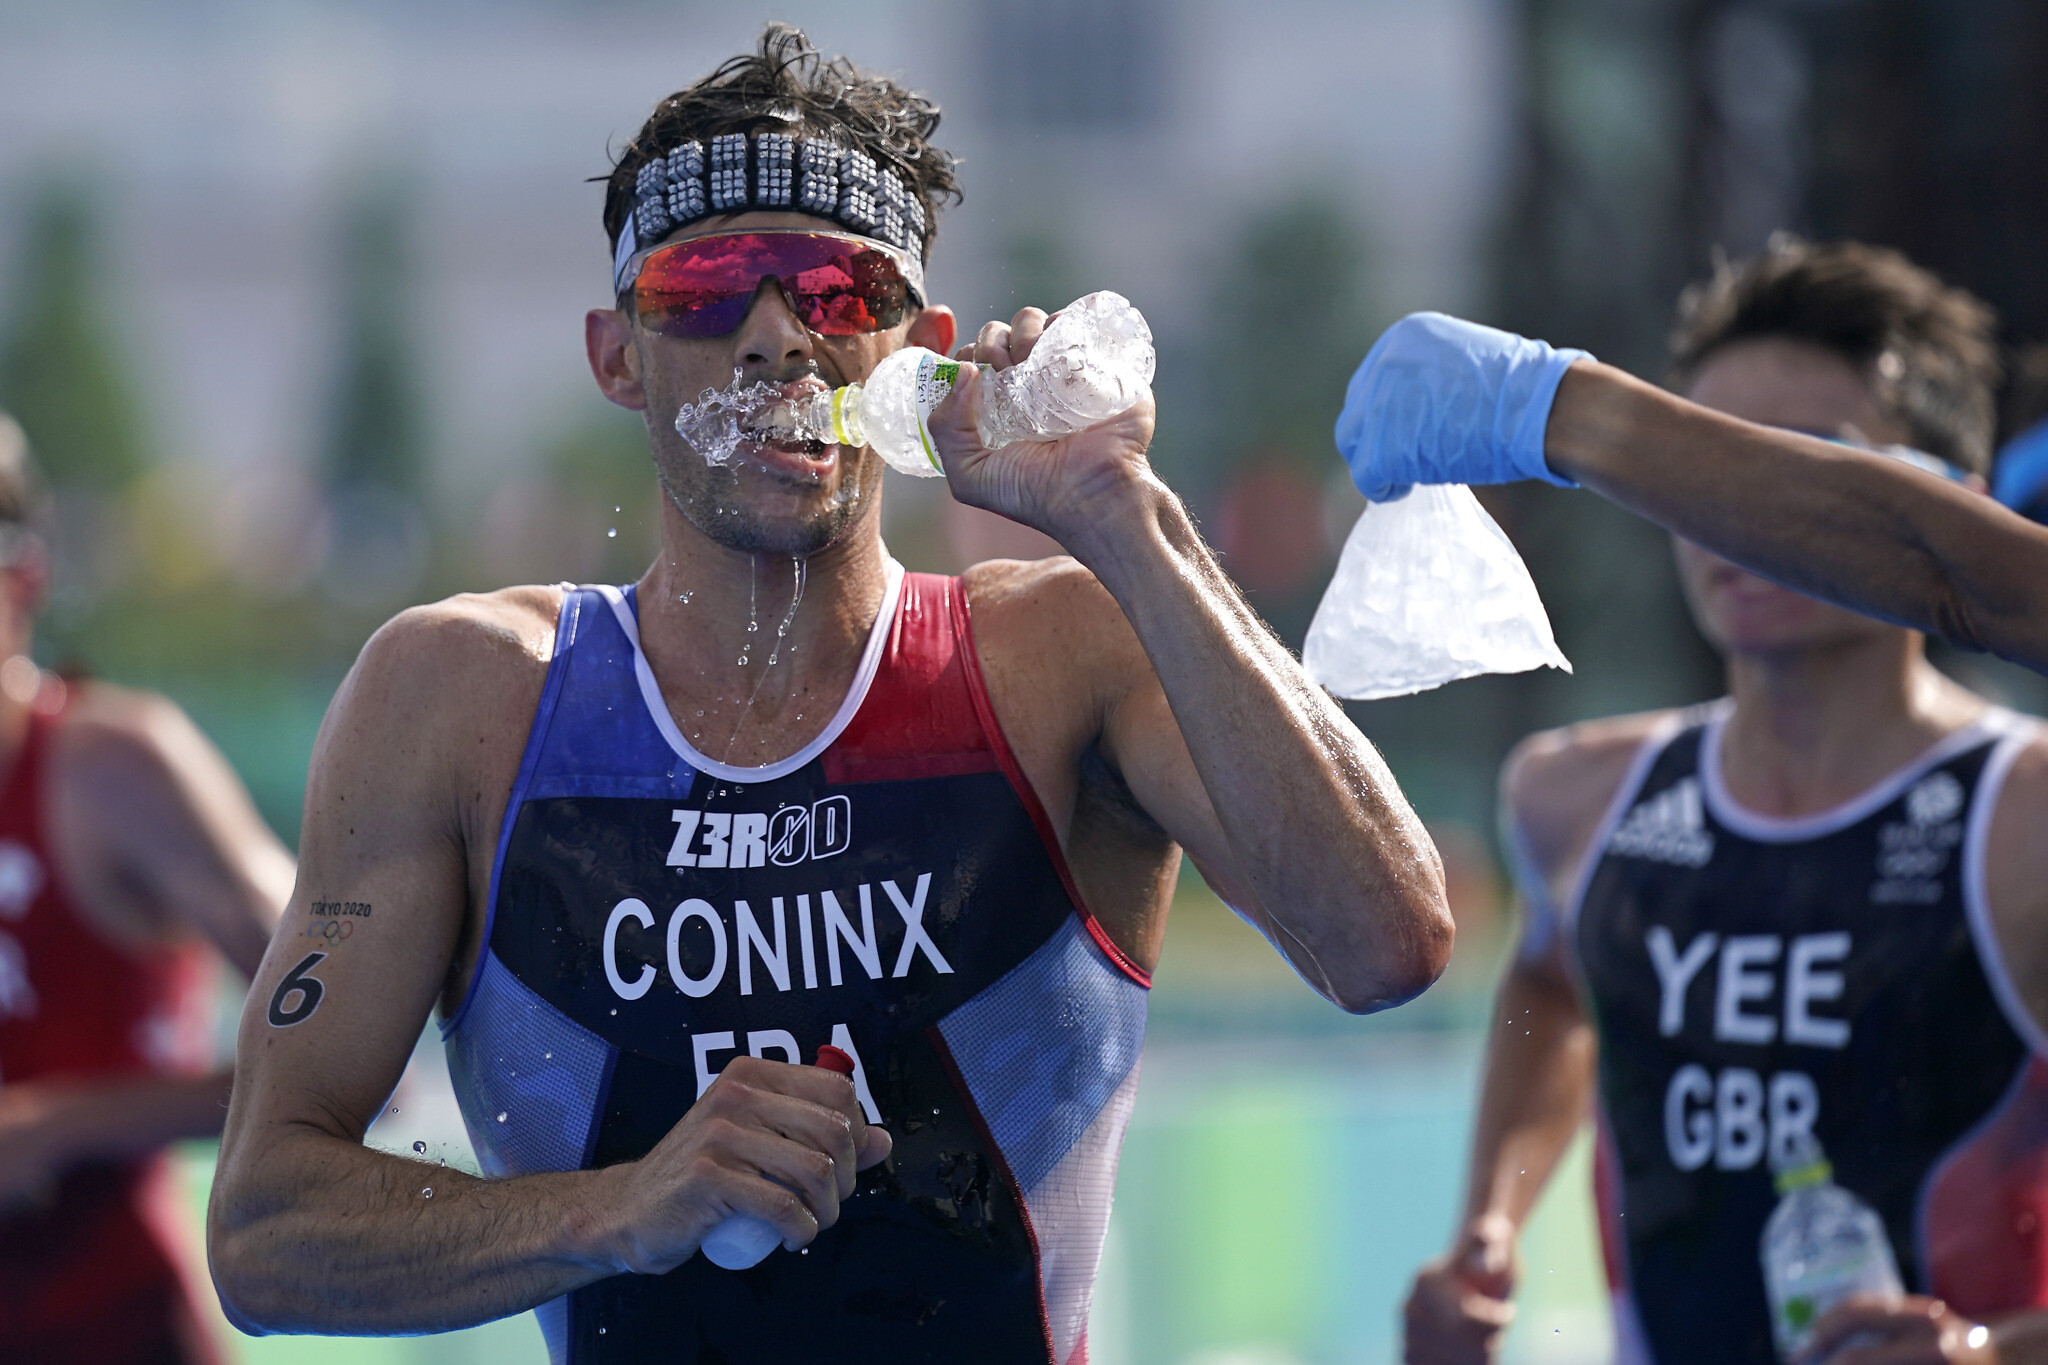 2020東京奧運鐵人三項男子組賽事當天，水溫攝氏 28.9 度、氣溫攝氏 26.7 度、濕度 67.1%。圖片來源：AP Photo/Jae C. Hong